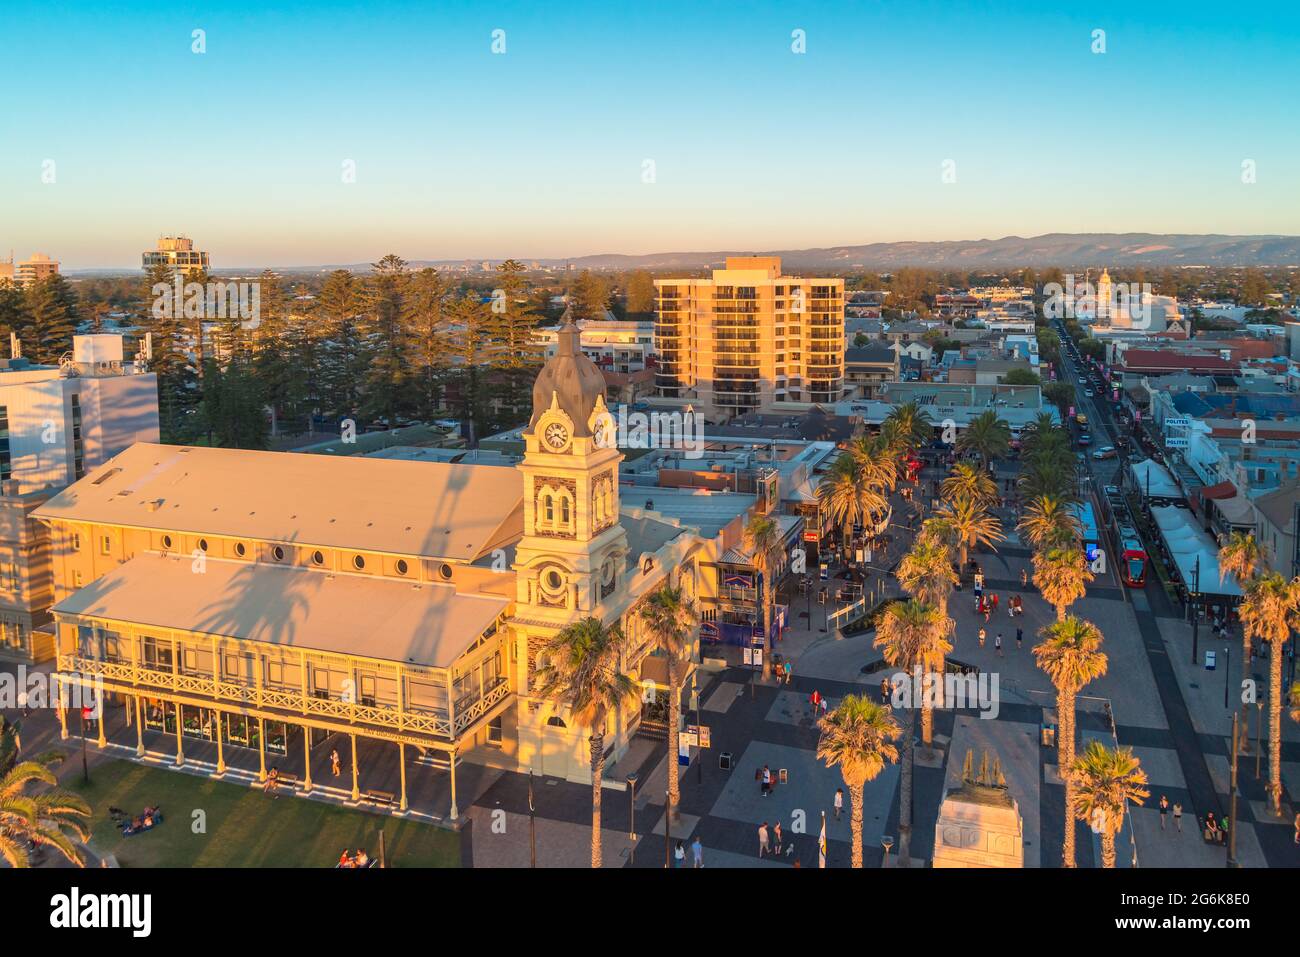 Adélaïde, Australie méridionale - 12 janvier 2019 : hôtel de ville de Moseley Square à Glenelg avec des gens qui marchent depuis le haut, au coucher du soleil Banque D'Images